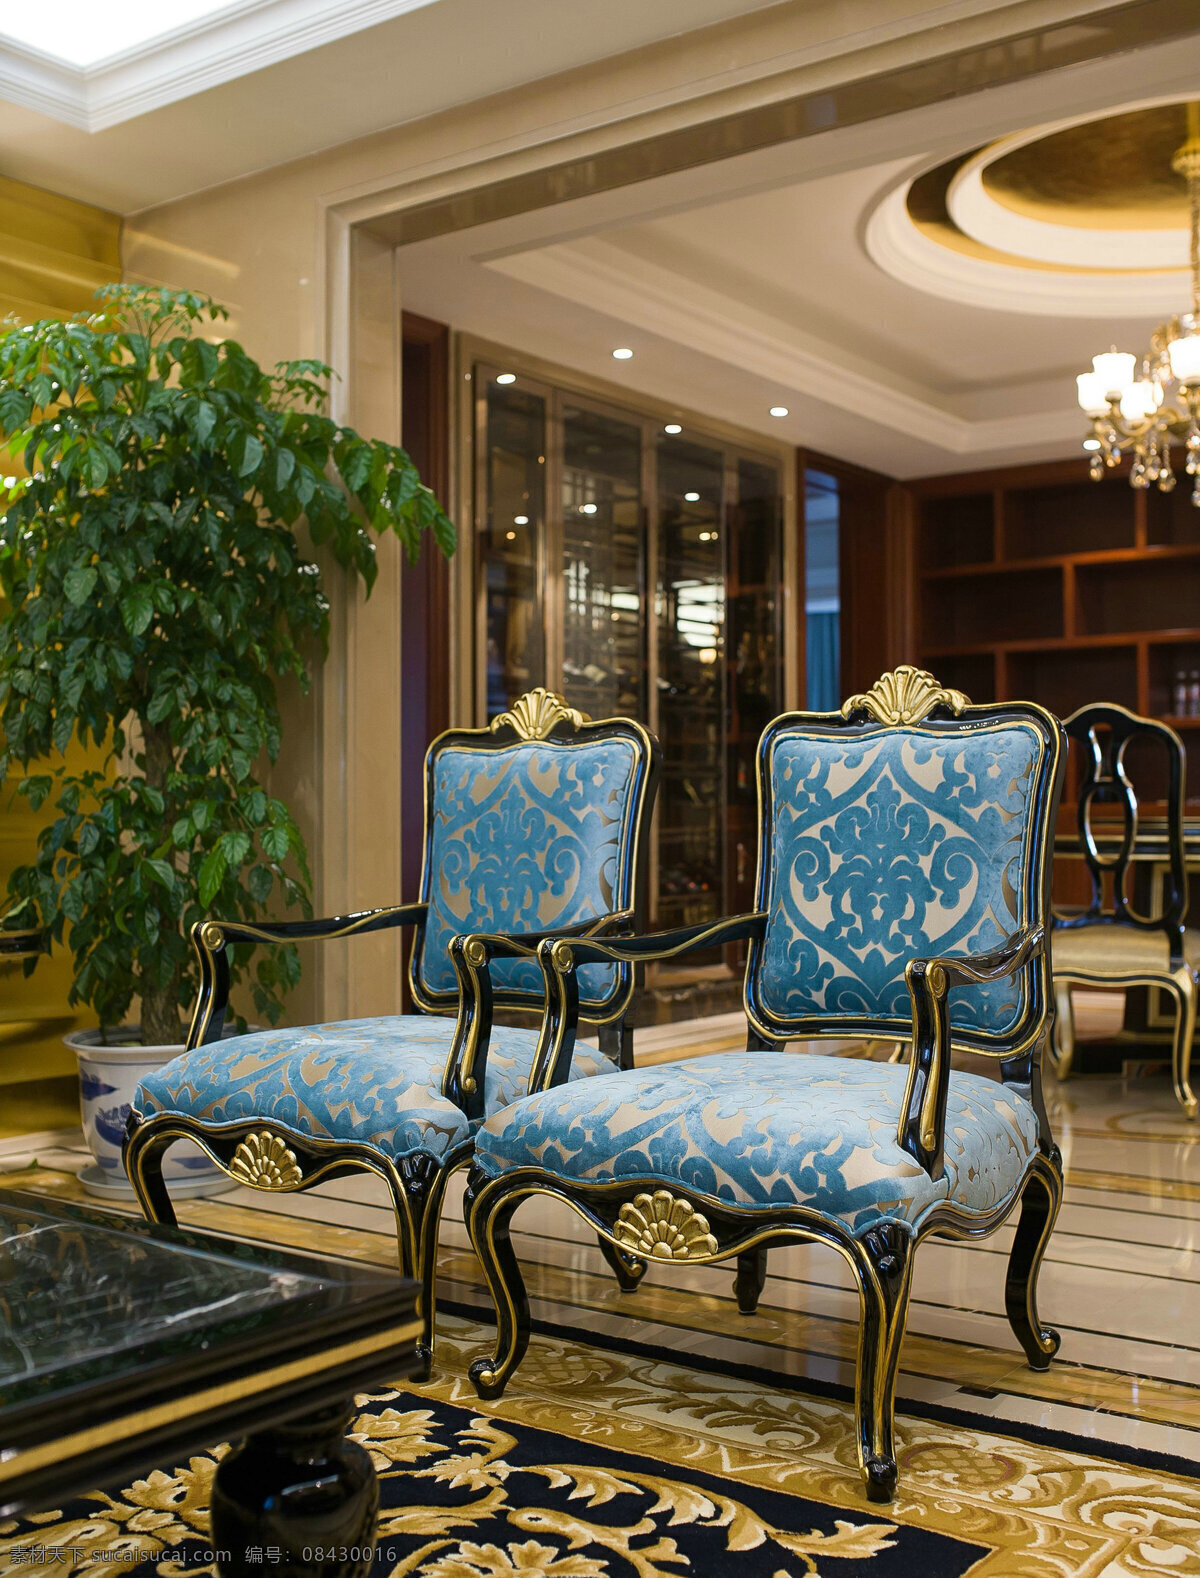 欧式 经典 奢华 客厅 椅子 效果图 客厅装修